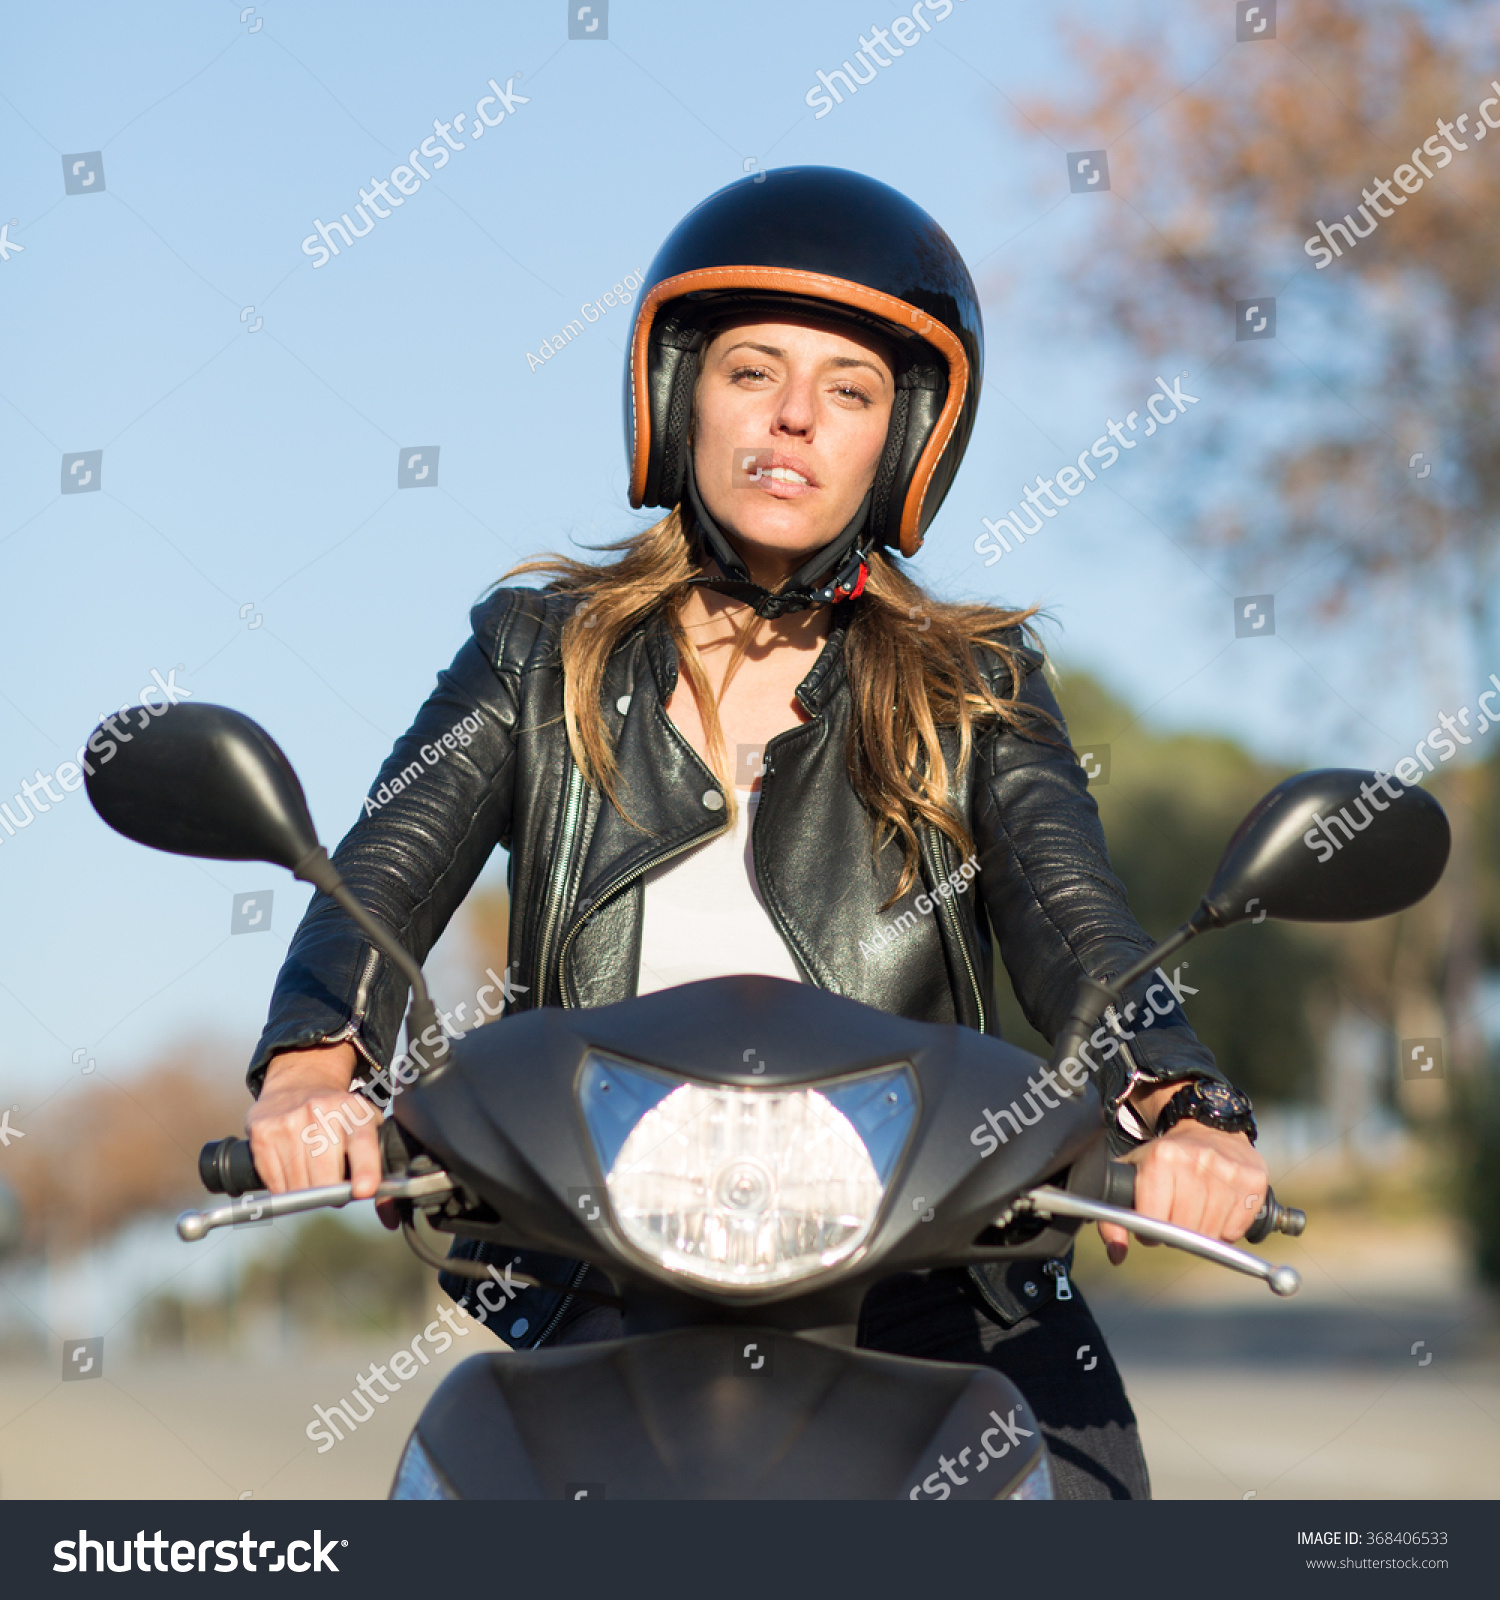 girl helmets for scooter